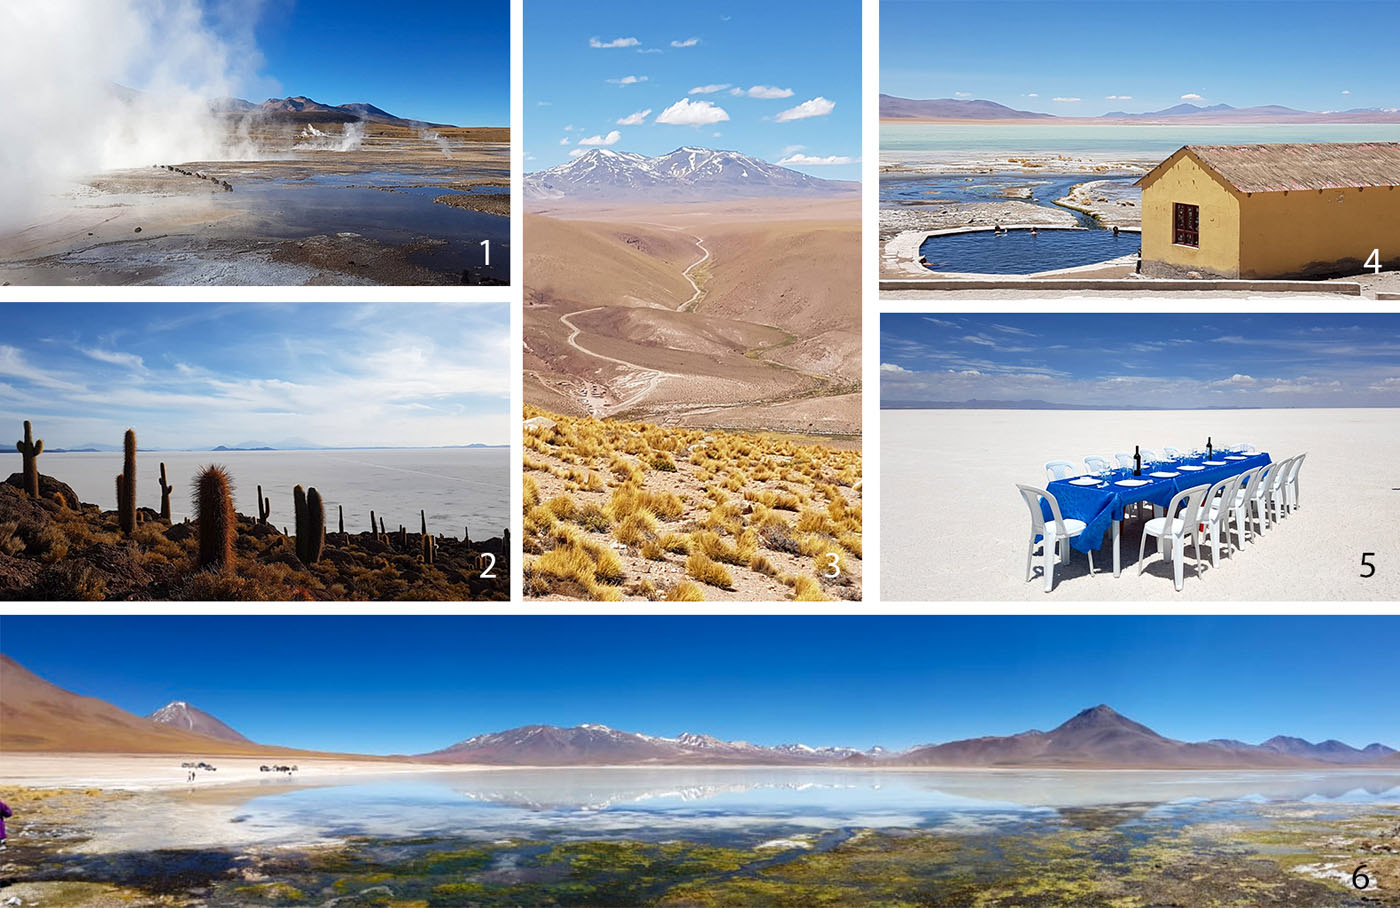 1 : Geysers du Tatio, Chili - 2 : L'île aux cactus d'Incahuasi dans le Salar d'Uyuni, Bolivie - 3 : Paysage du Sud Lipez - 4 : Baignade dans les eaux thermales du Sud Lipez - 5 : Pique-nique sur le Salar d'Uyuni, Bolivie - 6 : Laguna Hedionda, Sud Lipez, Bolivie